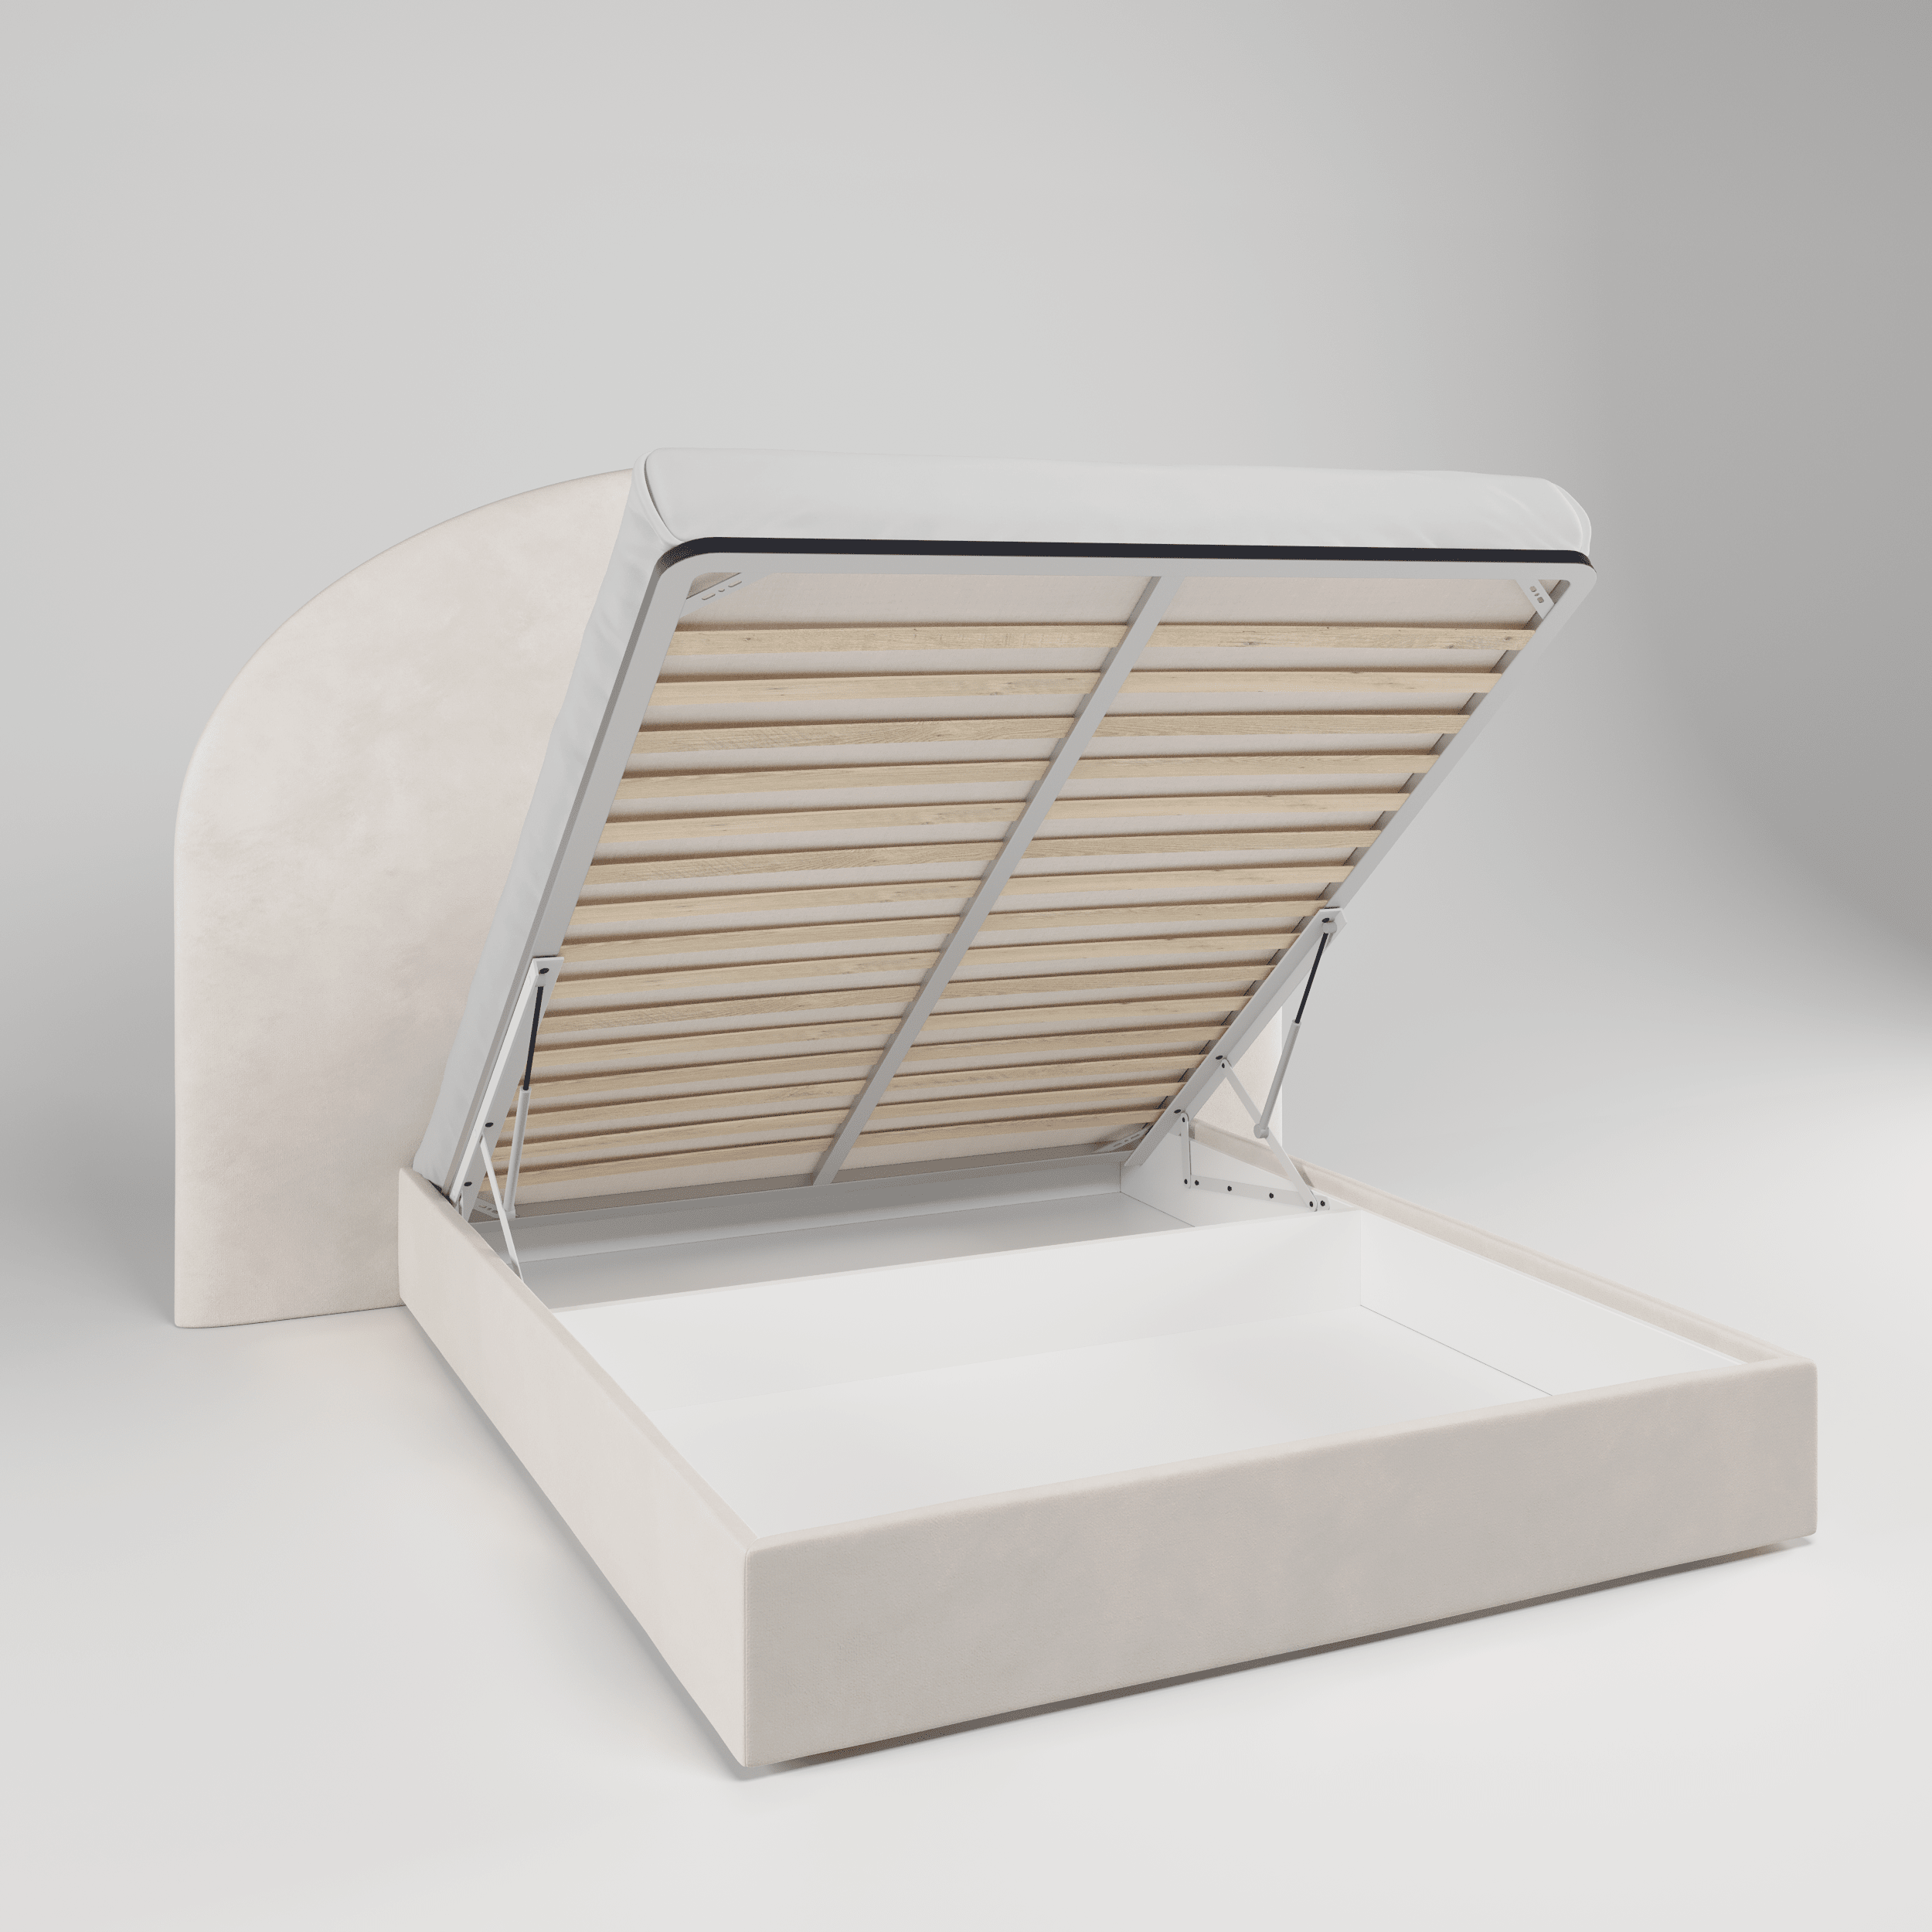 Мягкая кровать Аура, NEO 25 (серый), 160х200